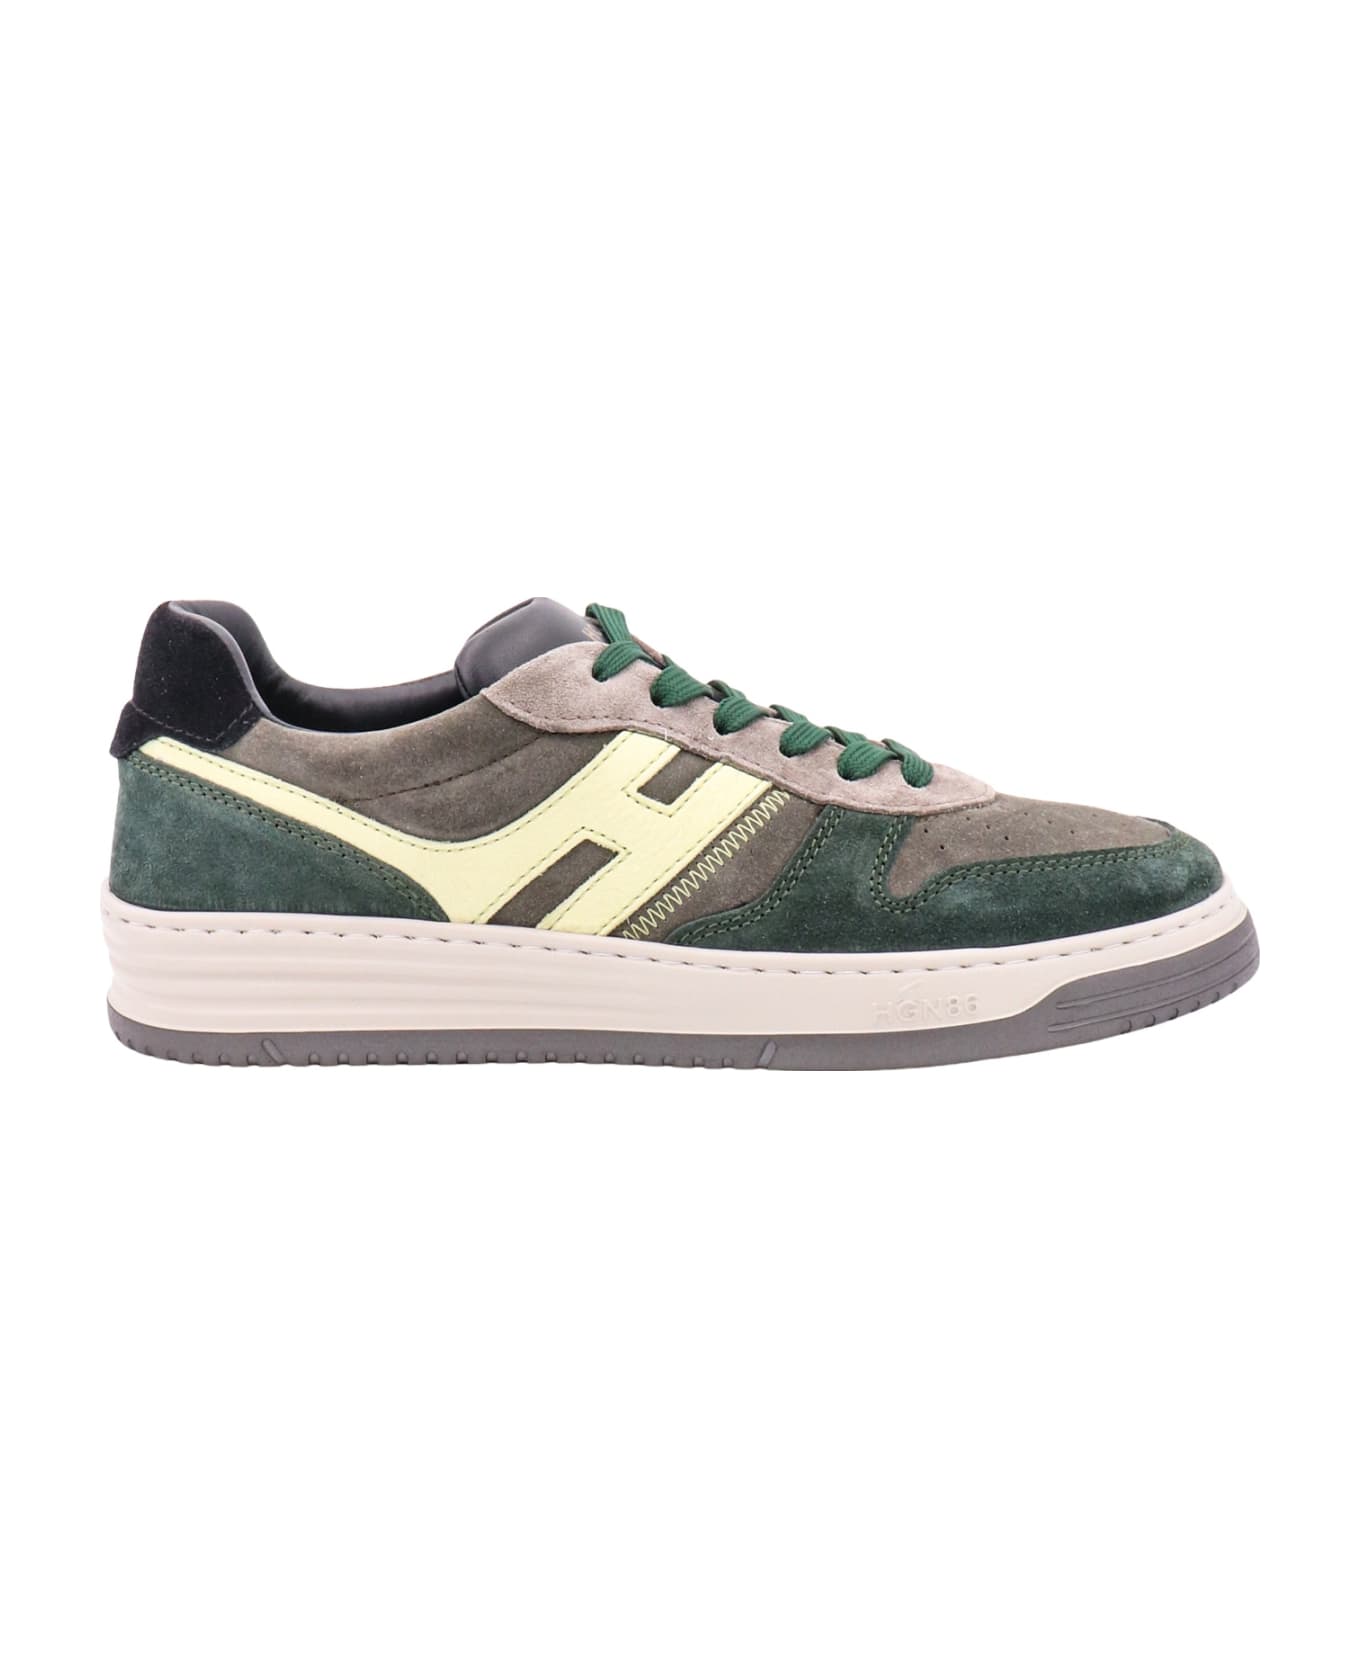 Hogan H630 Sneakers - Green